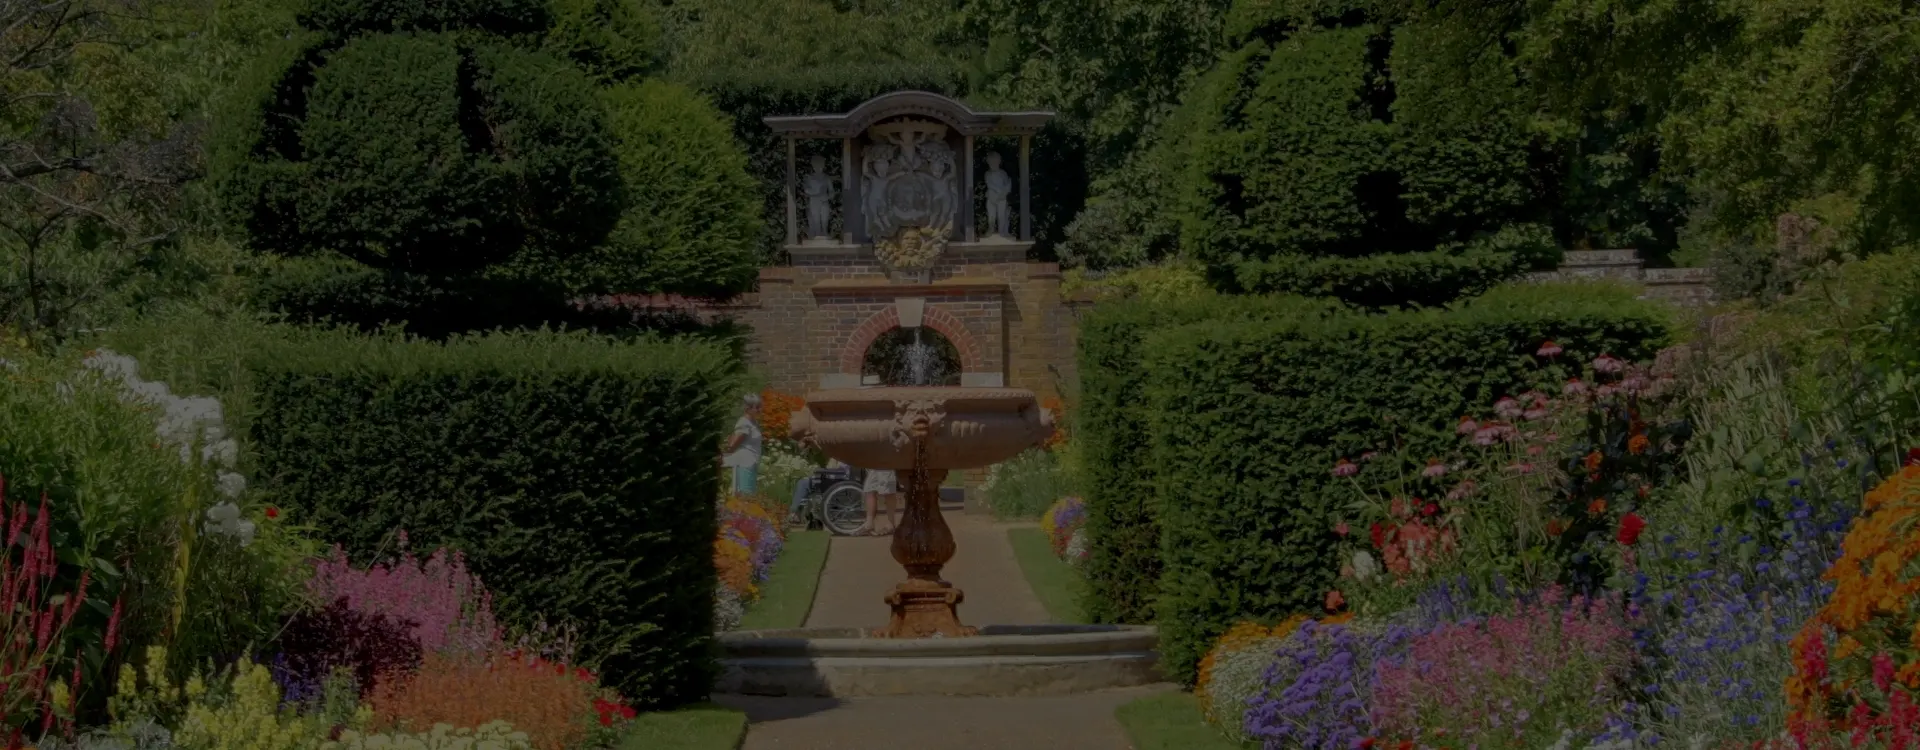 La fontaine, fraicheur et poesie au jardin